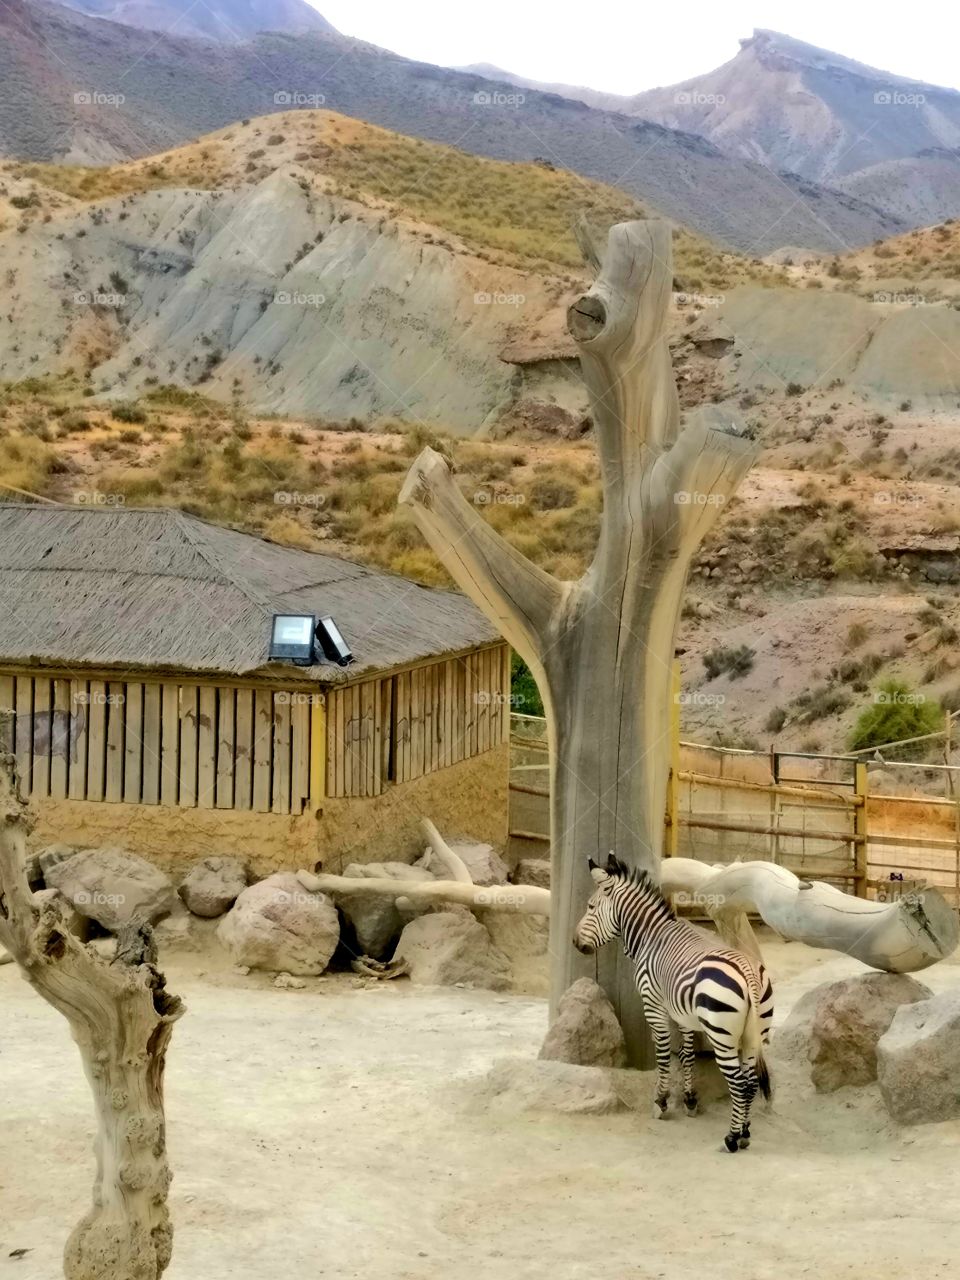 Zebra in the Desert of Taberna